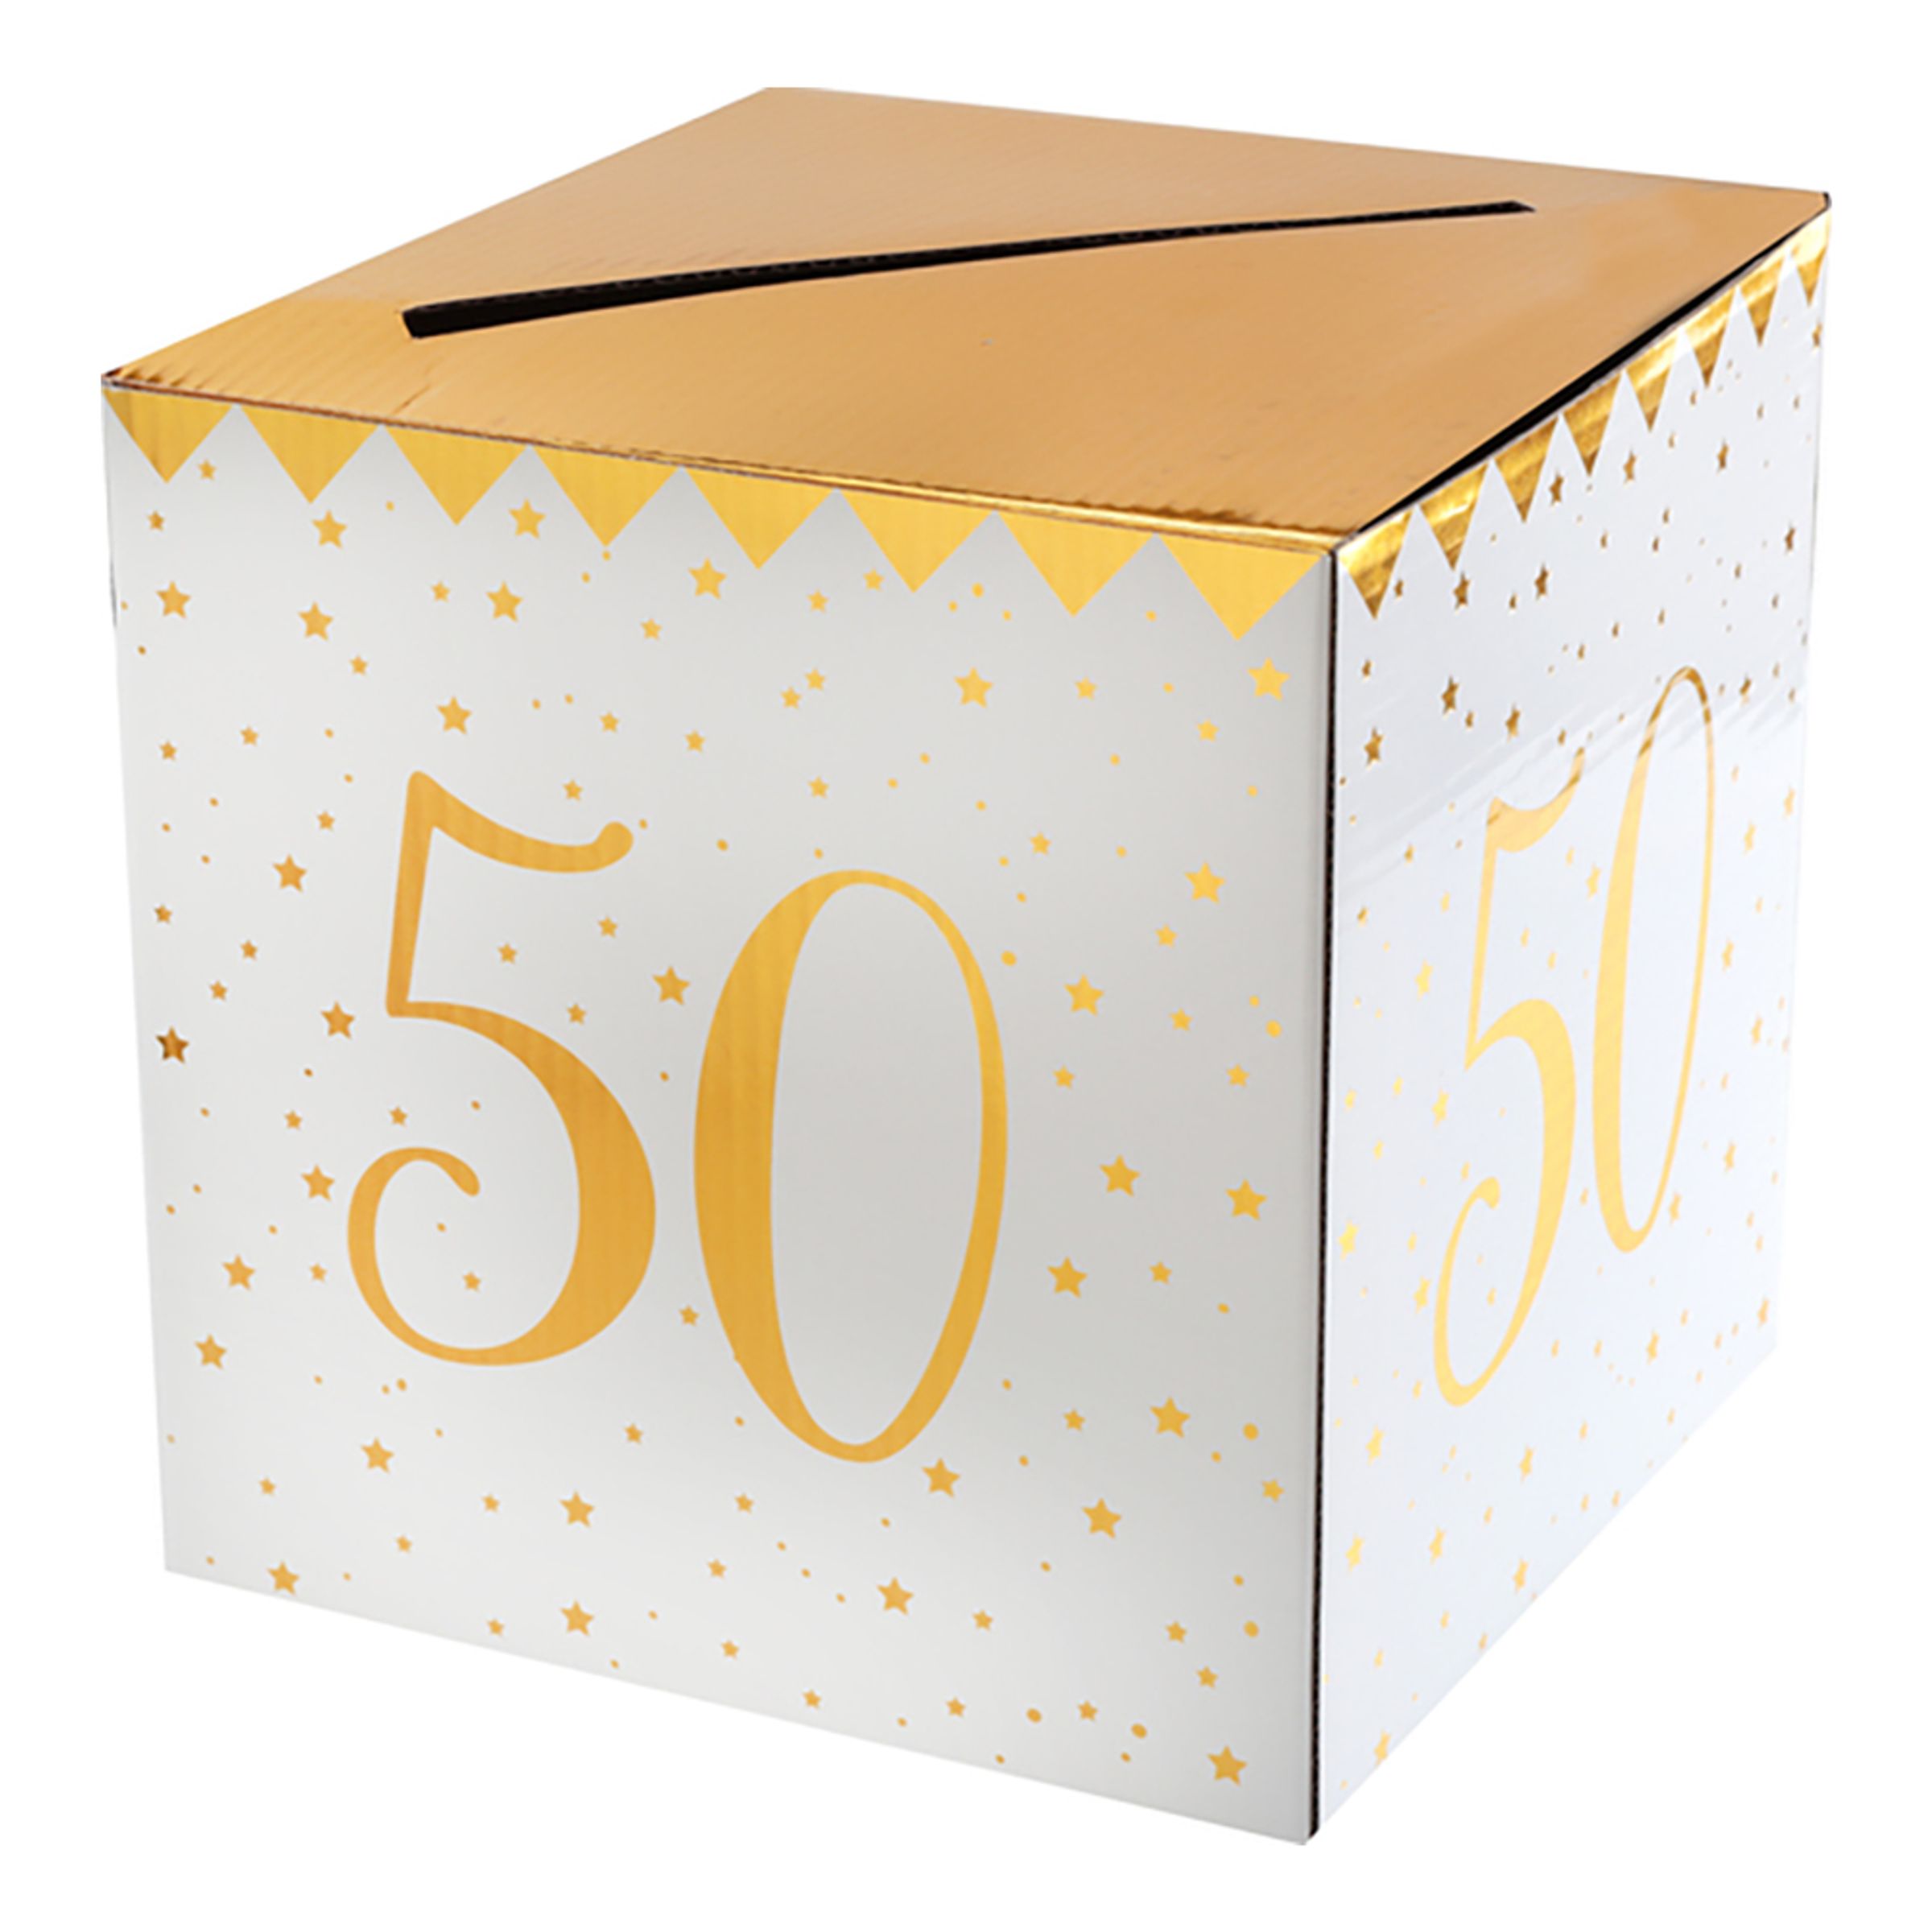 Presentbox Siffra med sedelfack Guld - Siffra 50